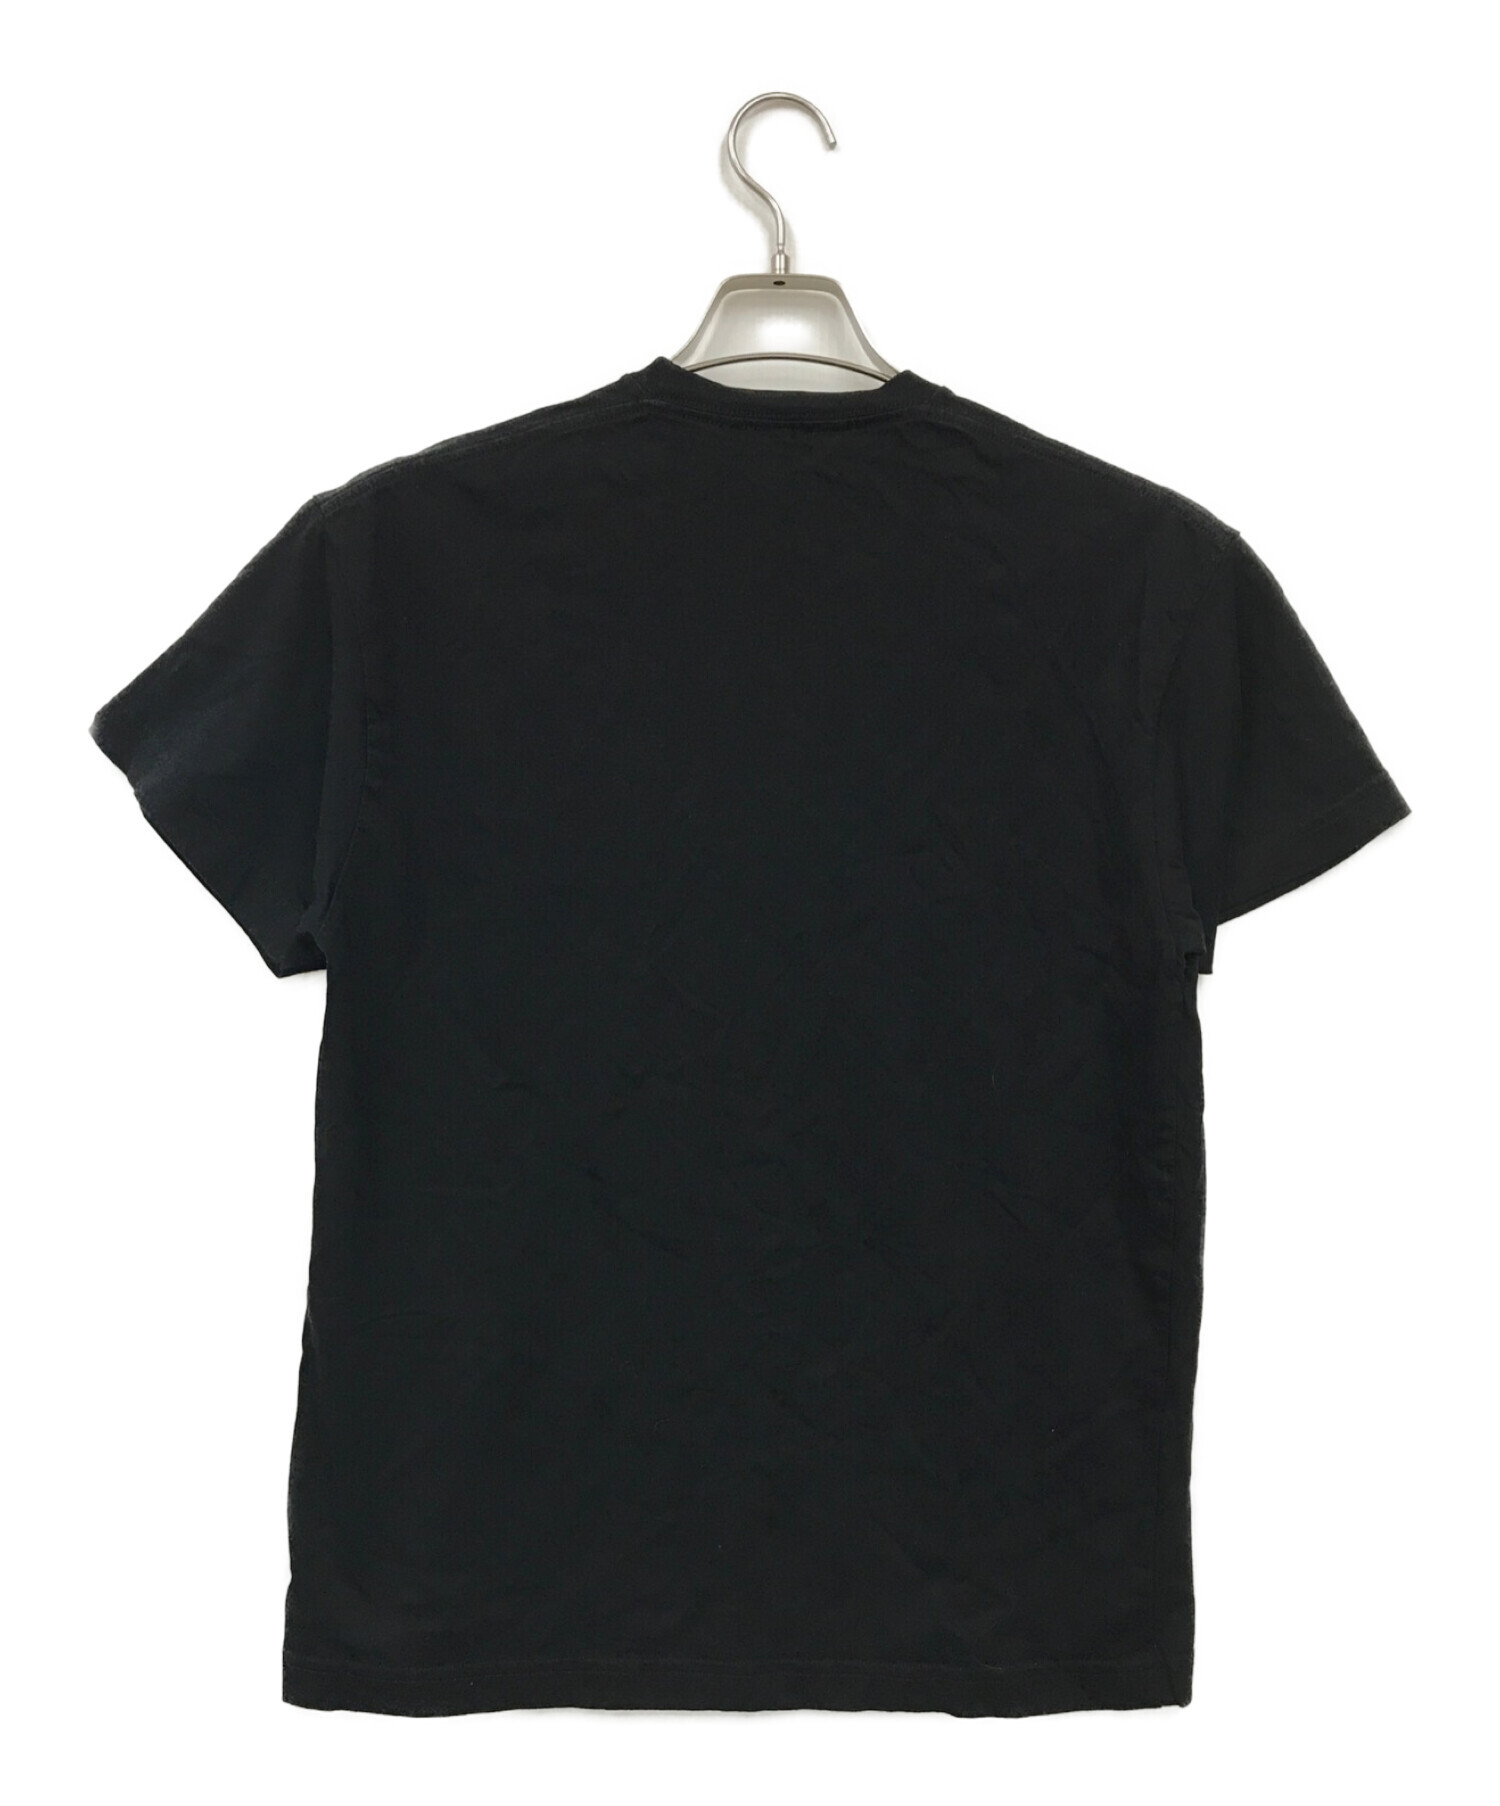 BALENCIAGA (バレンシアガ) ワンポイントロゴTシャツ ブラック サイズ:M